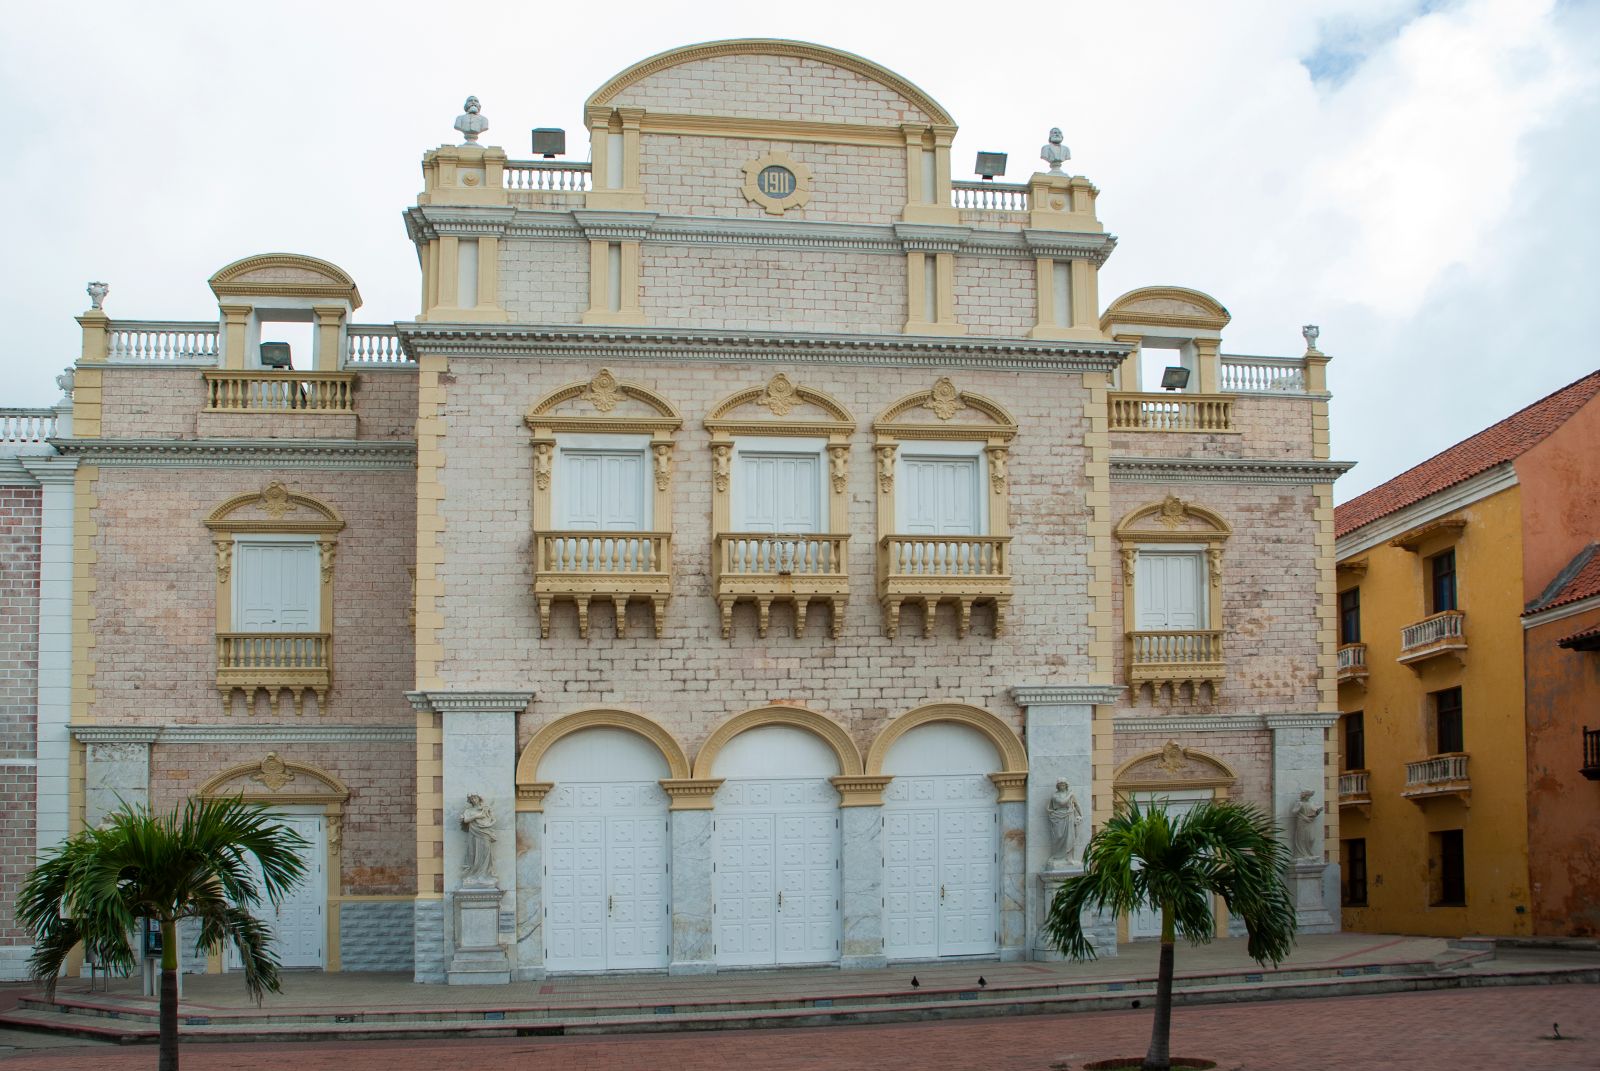 Teatro Heredia - Cartagena de Indias, Colombia